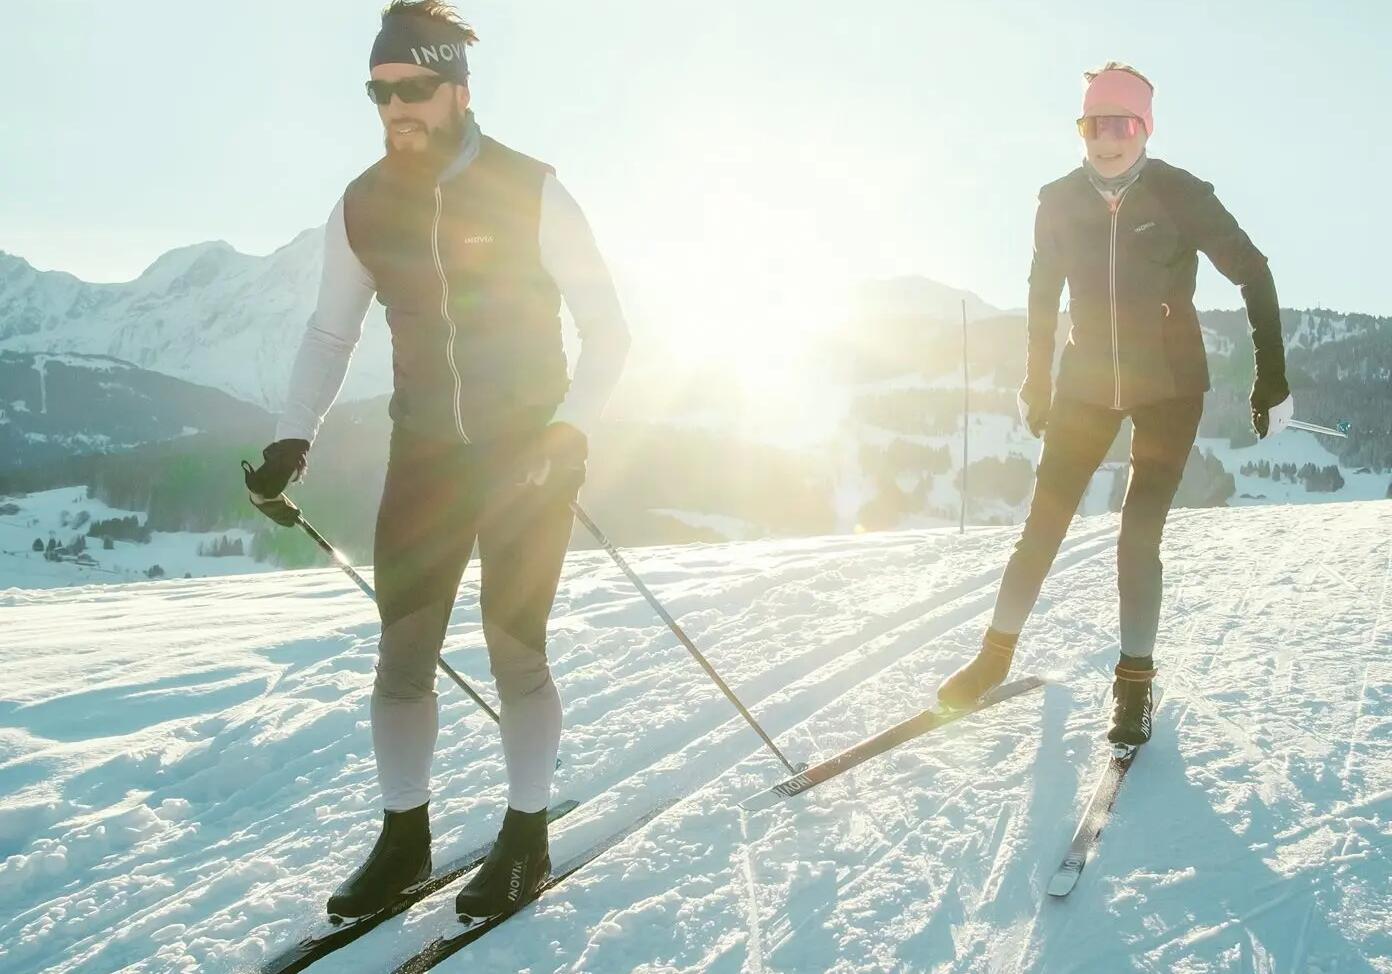 Ski de fond à Montréal : Les 10 meilleurs endroits où pratiquer